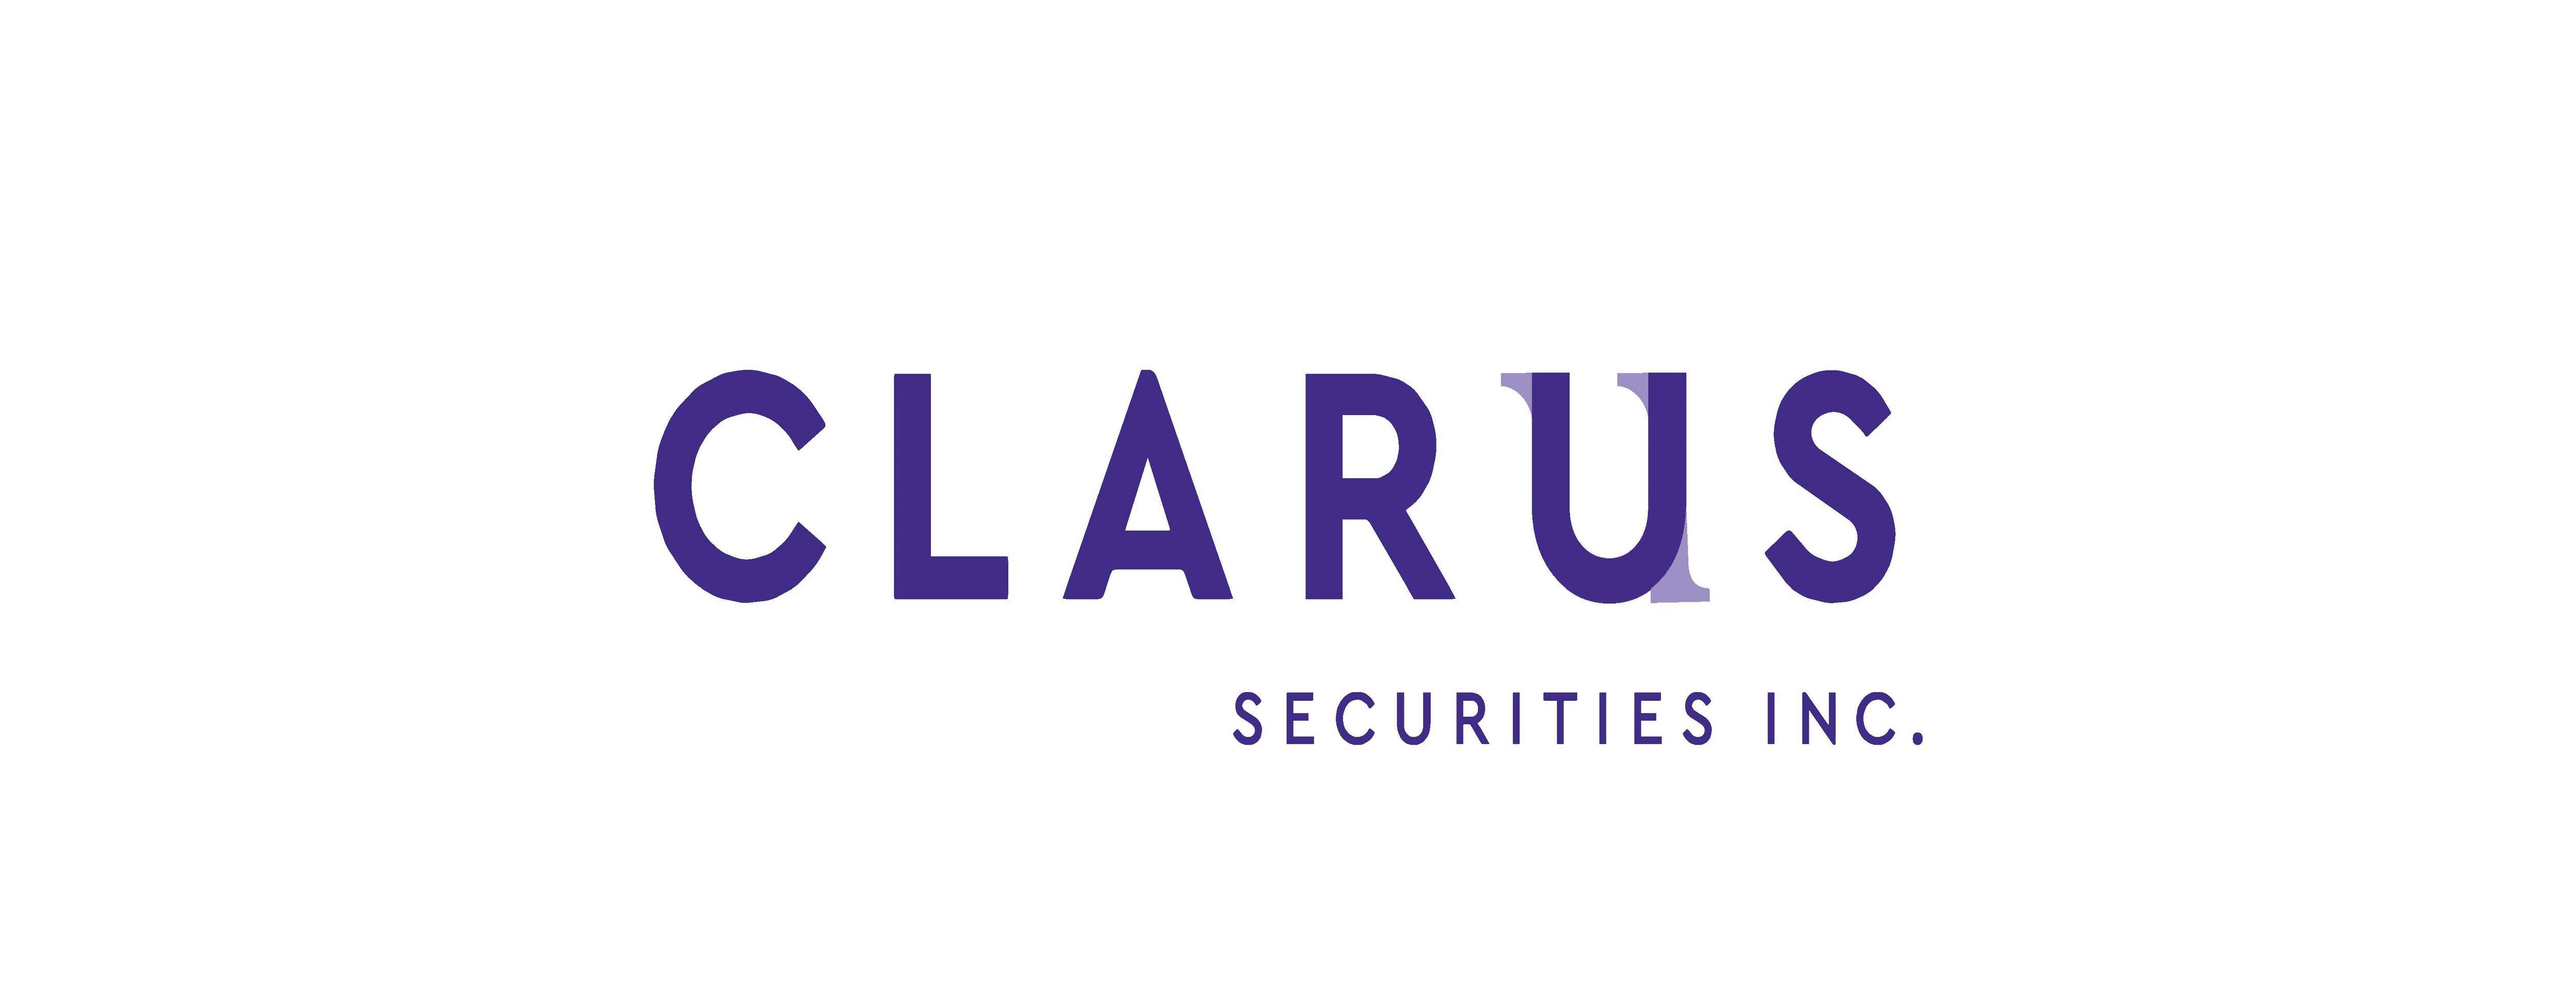 Clarus Securities